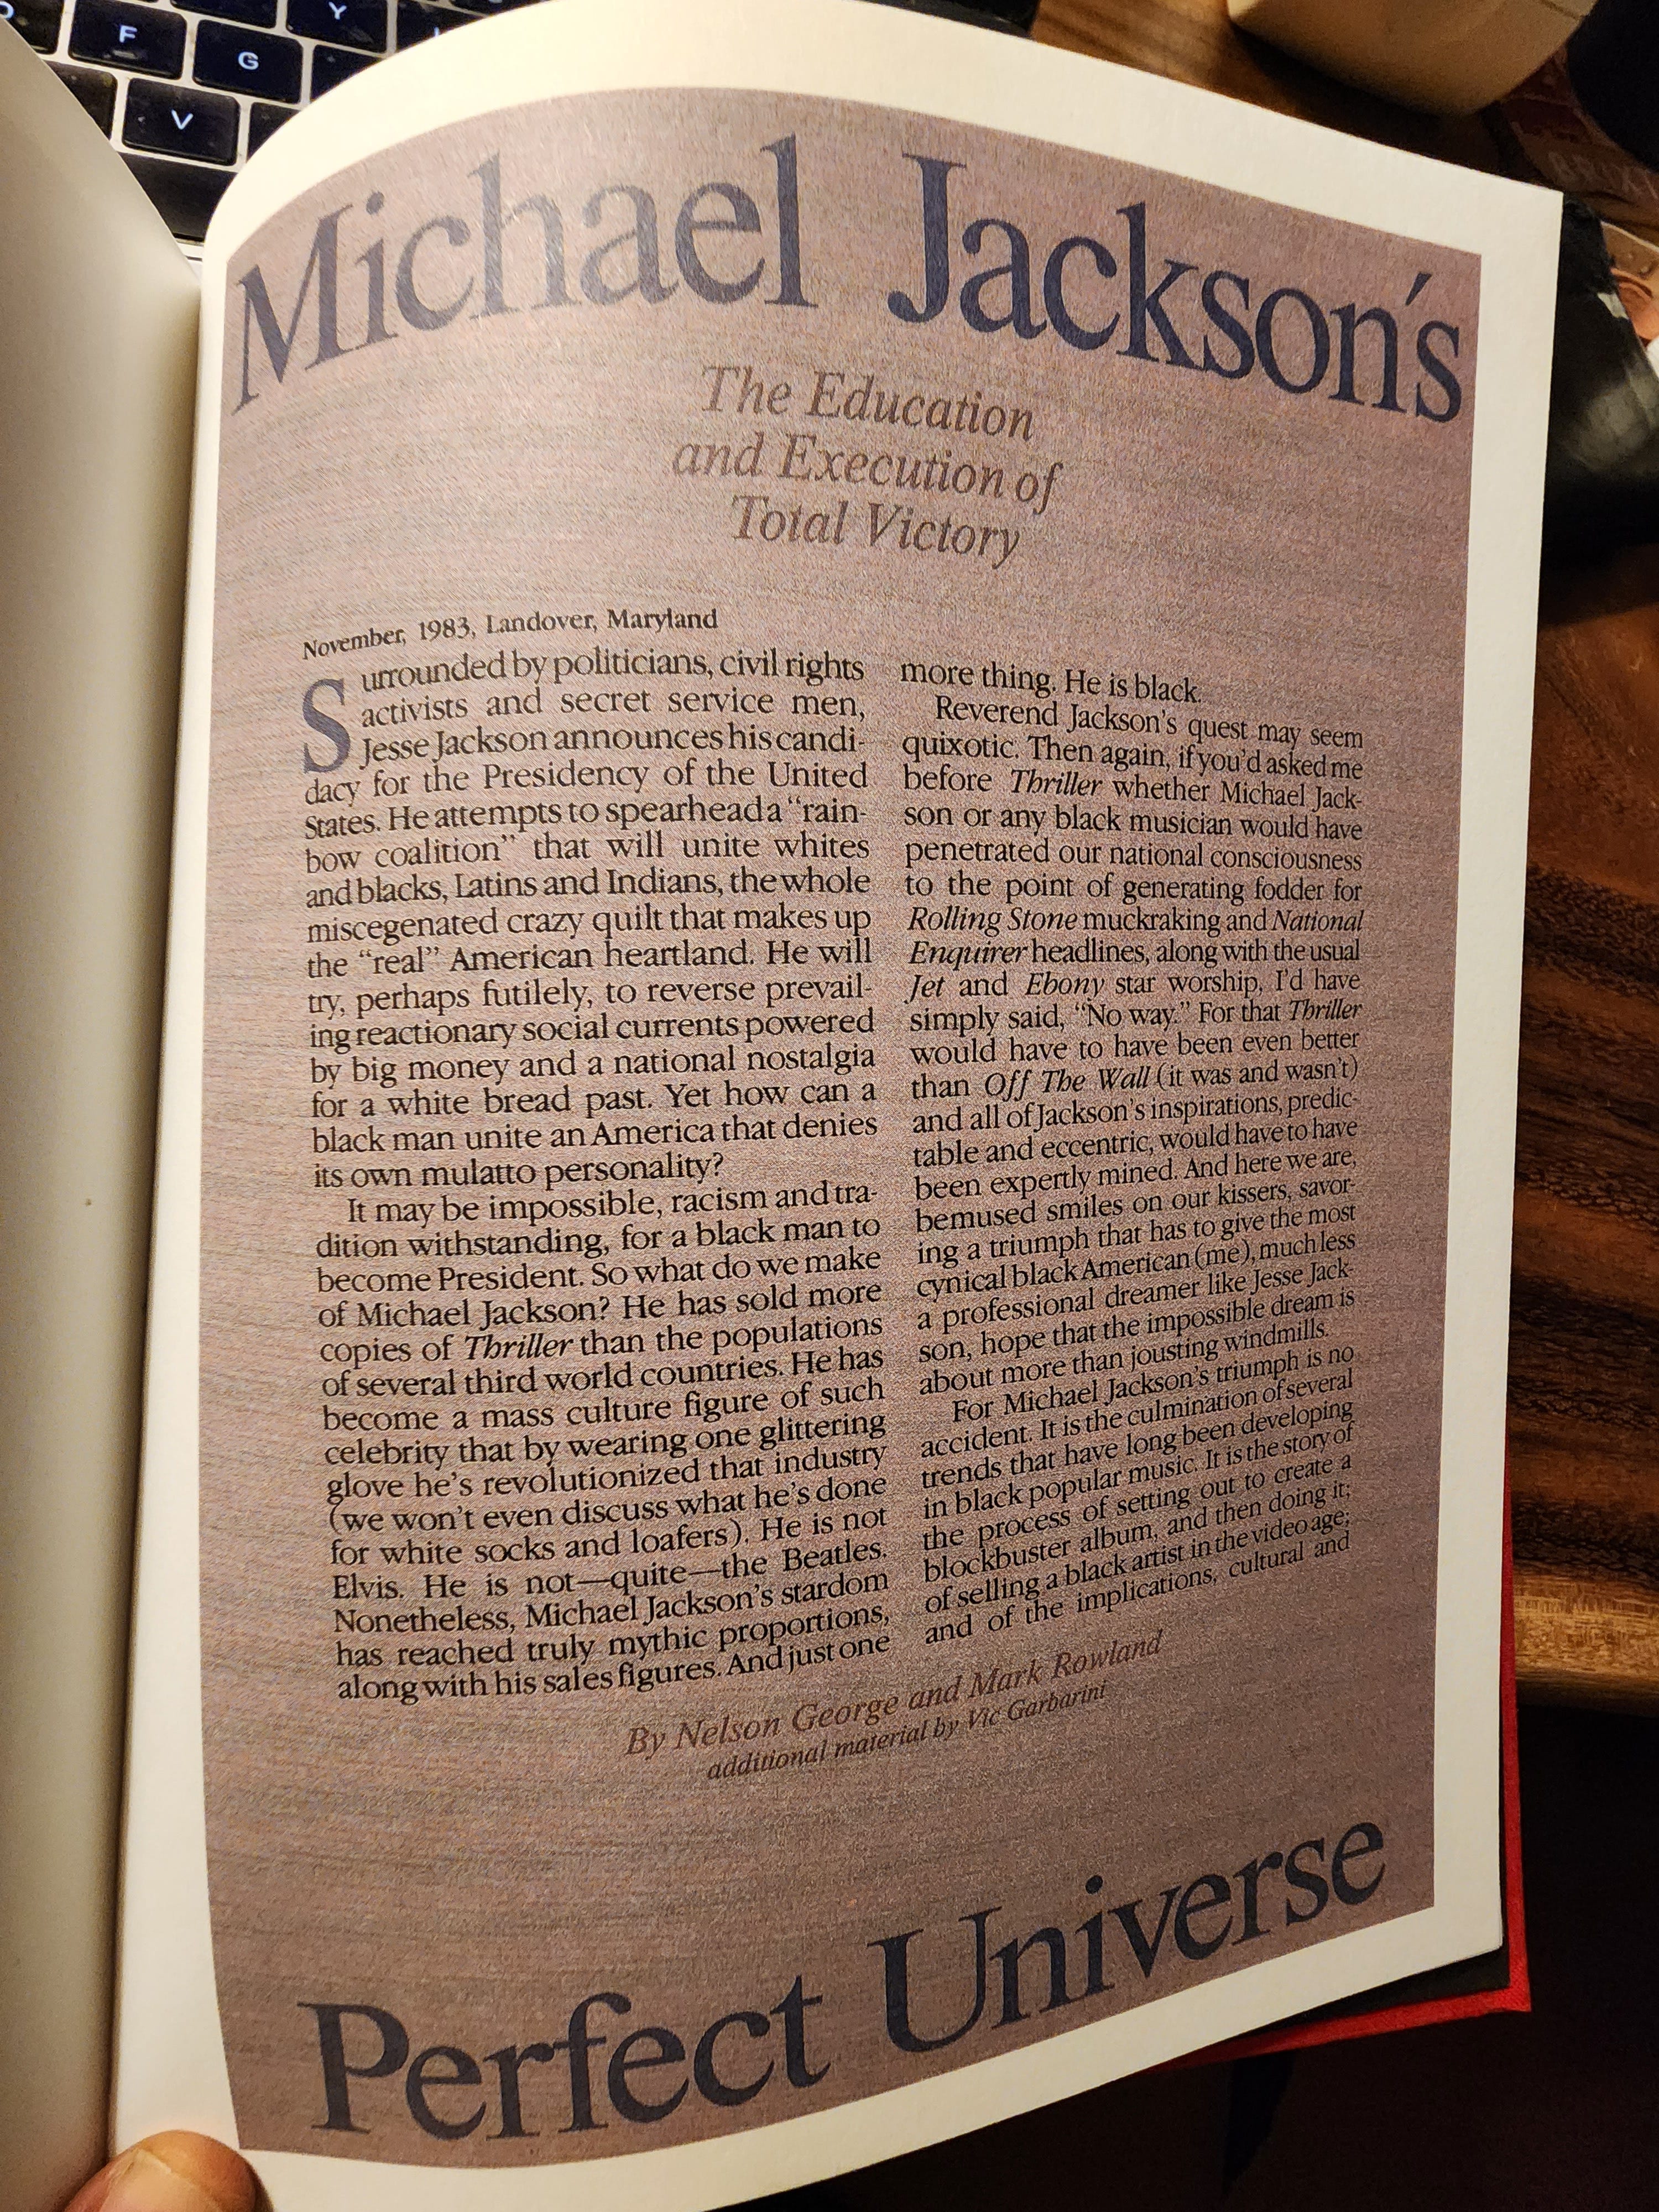 Michael Jackson documentary: 'Thriller 40' focuses on the art, not the  artist